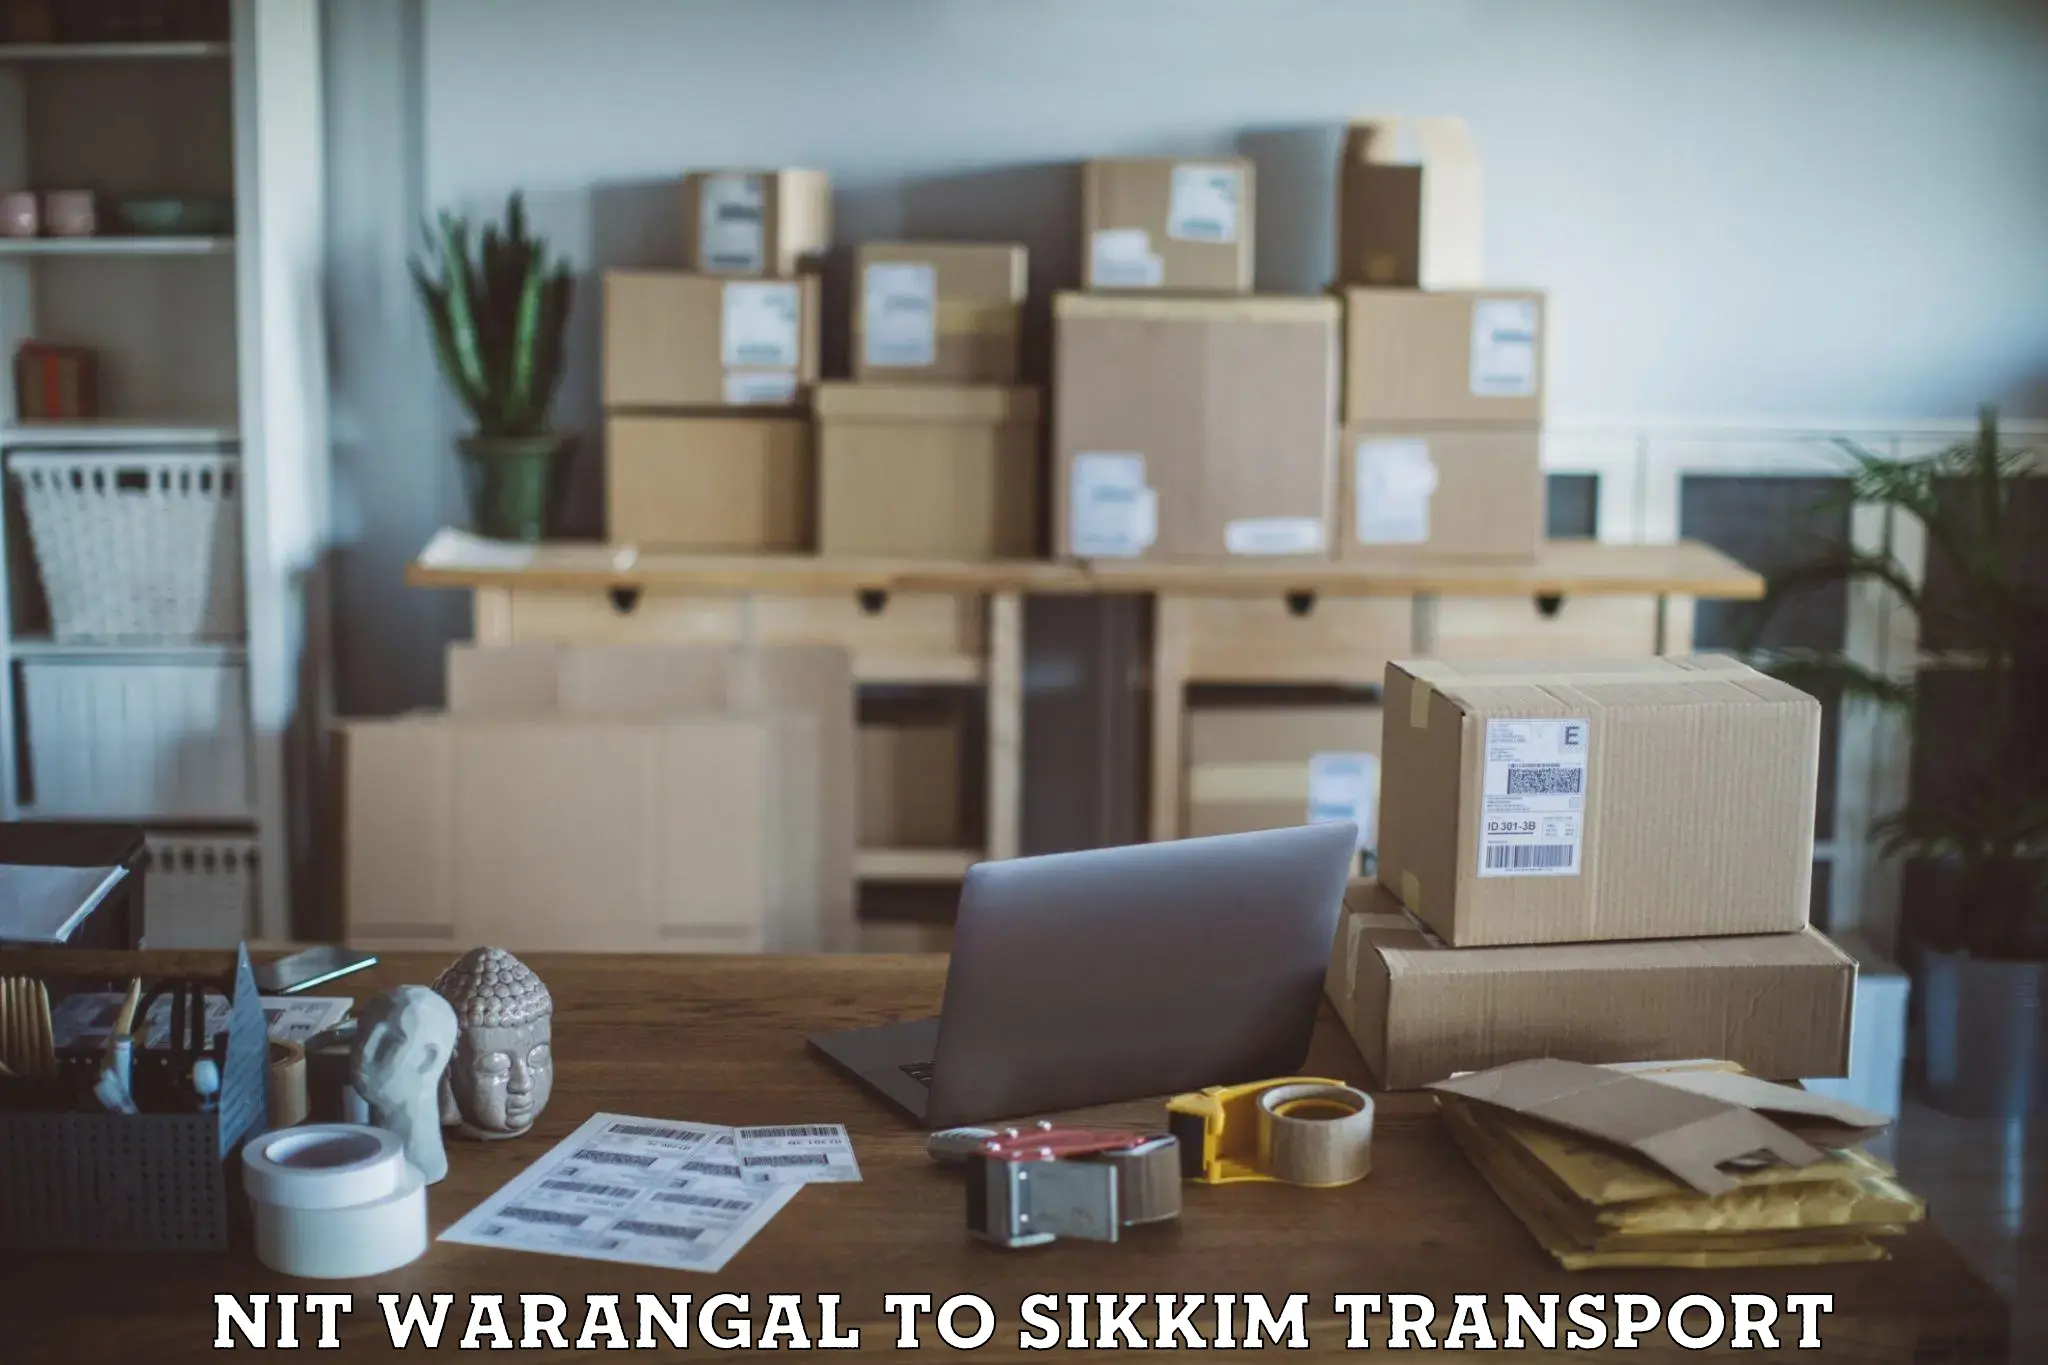 Two wheeler parcel service NIT Warangal to Sikkim